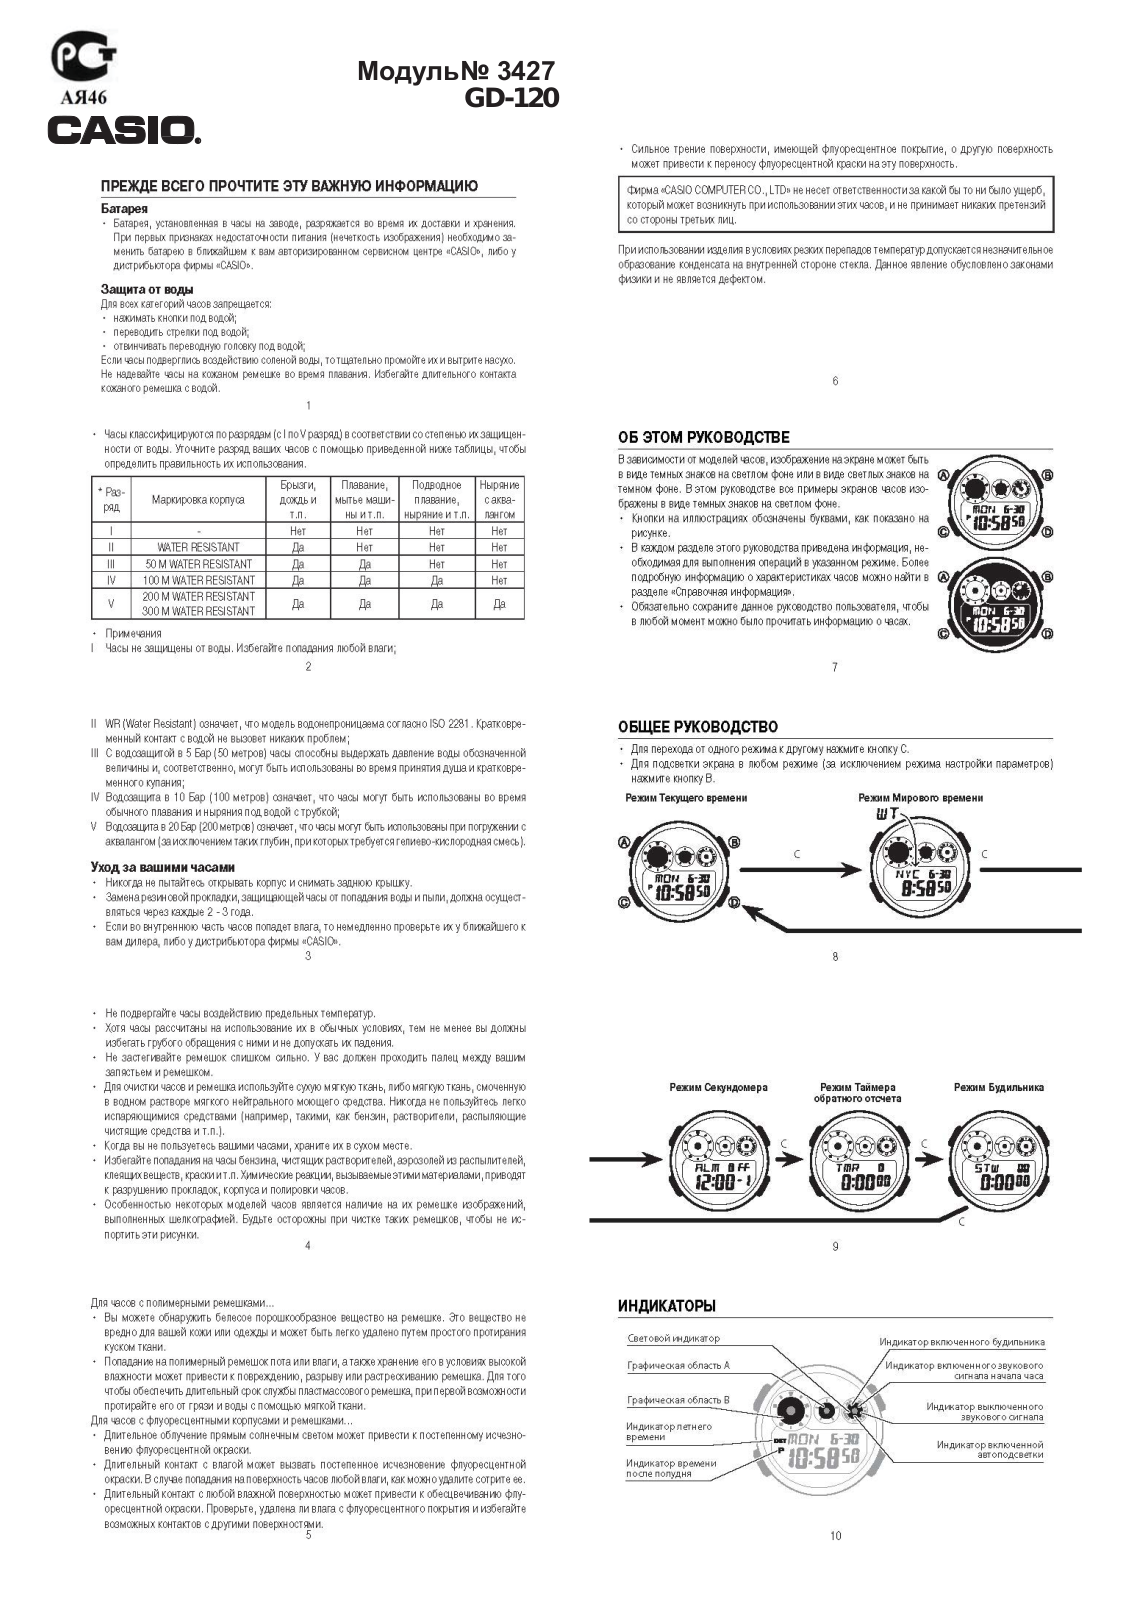 Casio GD-120CM-5E User Manual